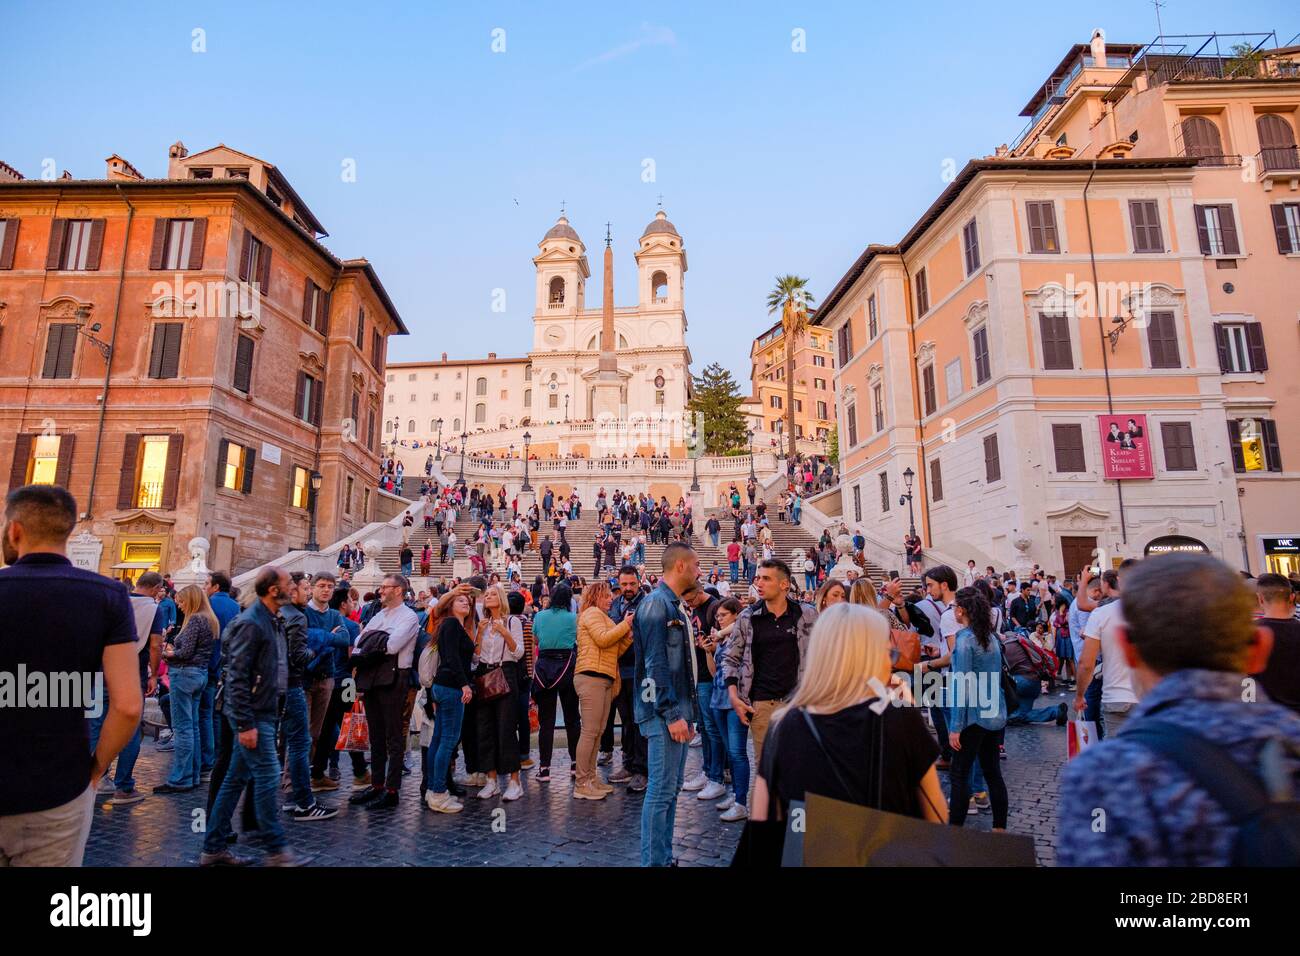 Übertourismus, Massentourismus, Touristenmassen an der Piazza di Spagna am unteren Ende der spanischen Treppe, Rom, Italien. Stockfoto